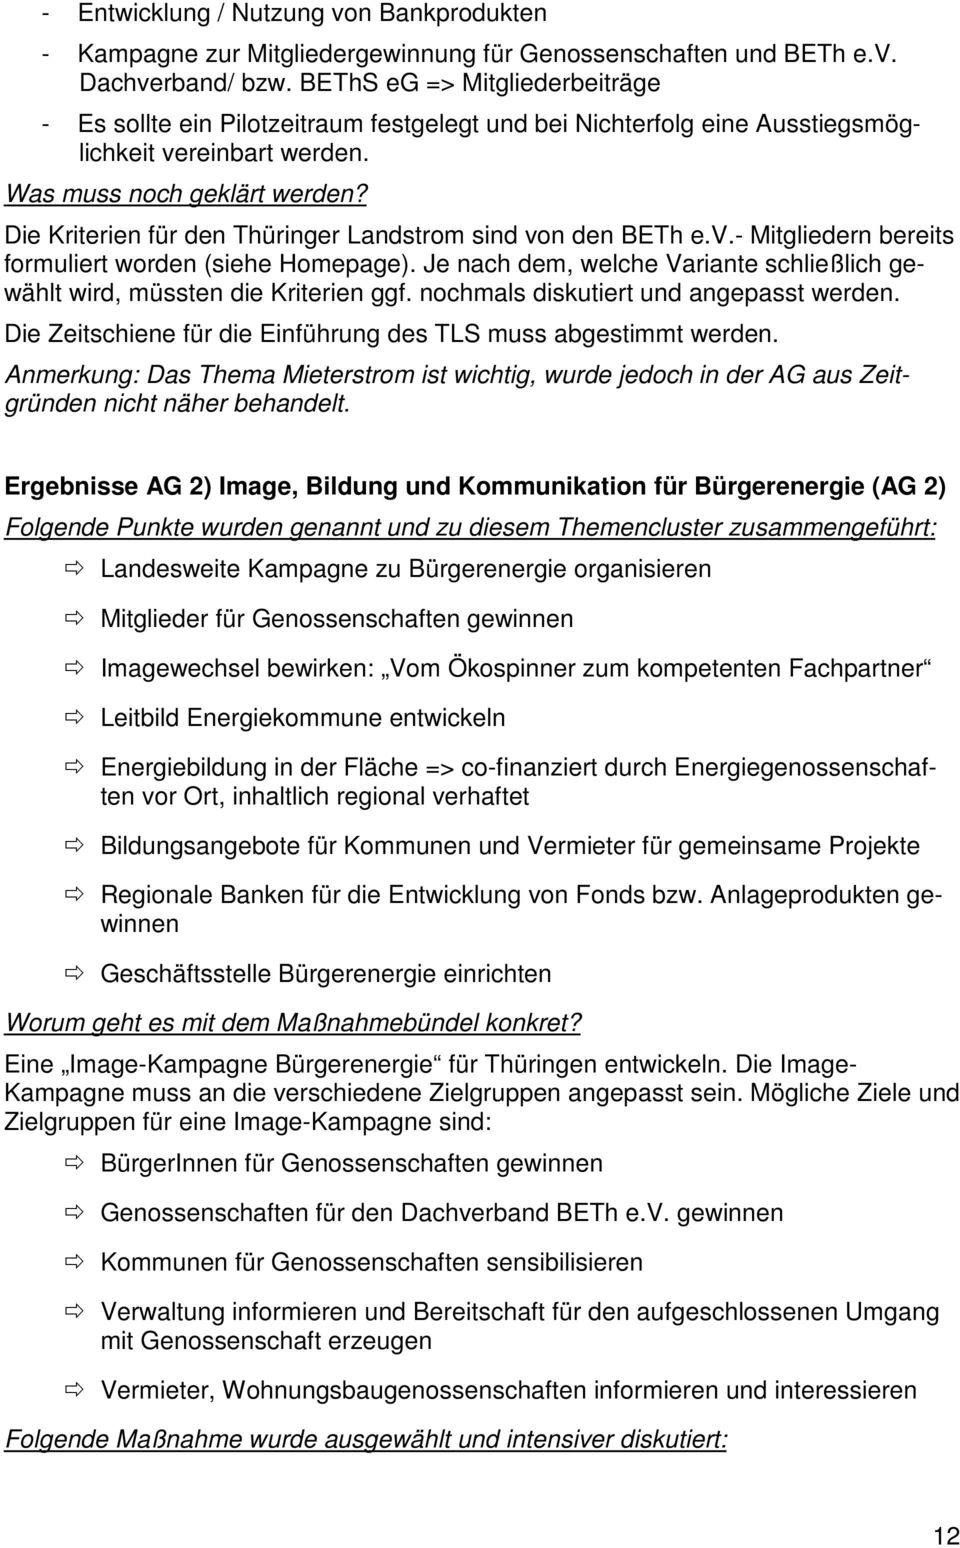 Die Kriterien für den Thüringer Landstrom sind von den BETh e.v.- Mitgliedern bereits formuliert worden (siehe Homepage).